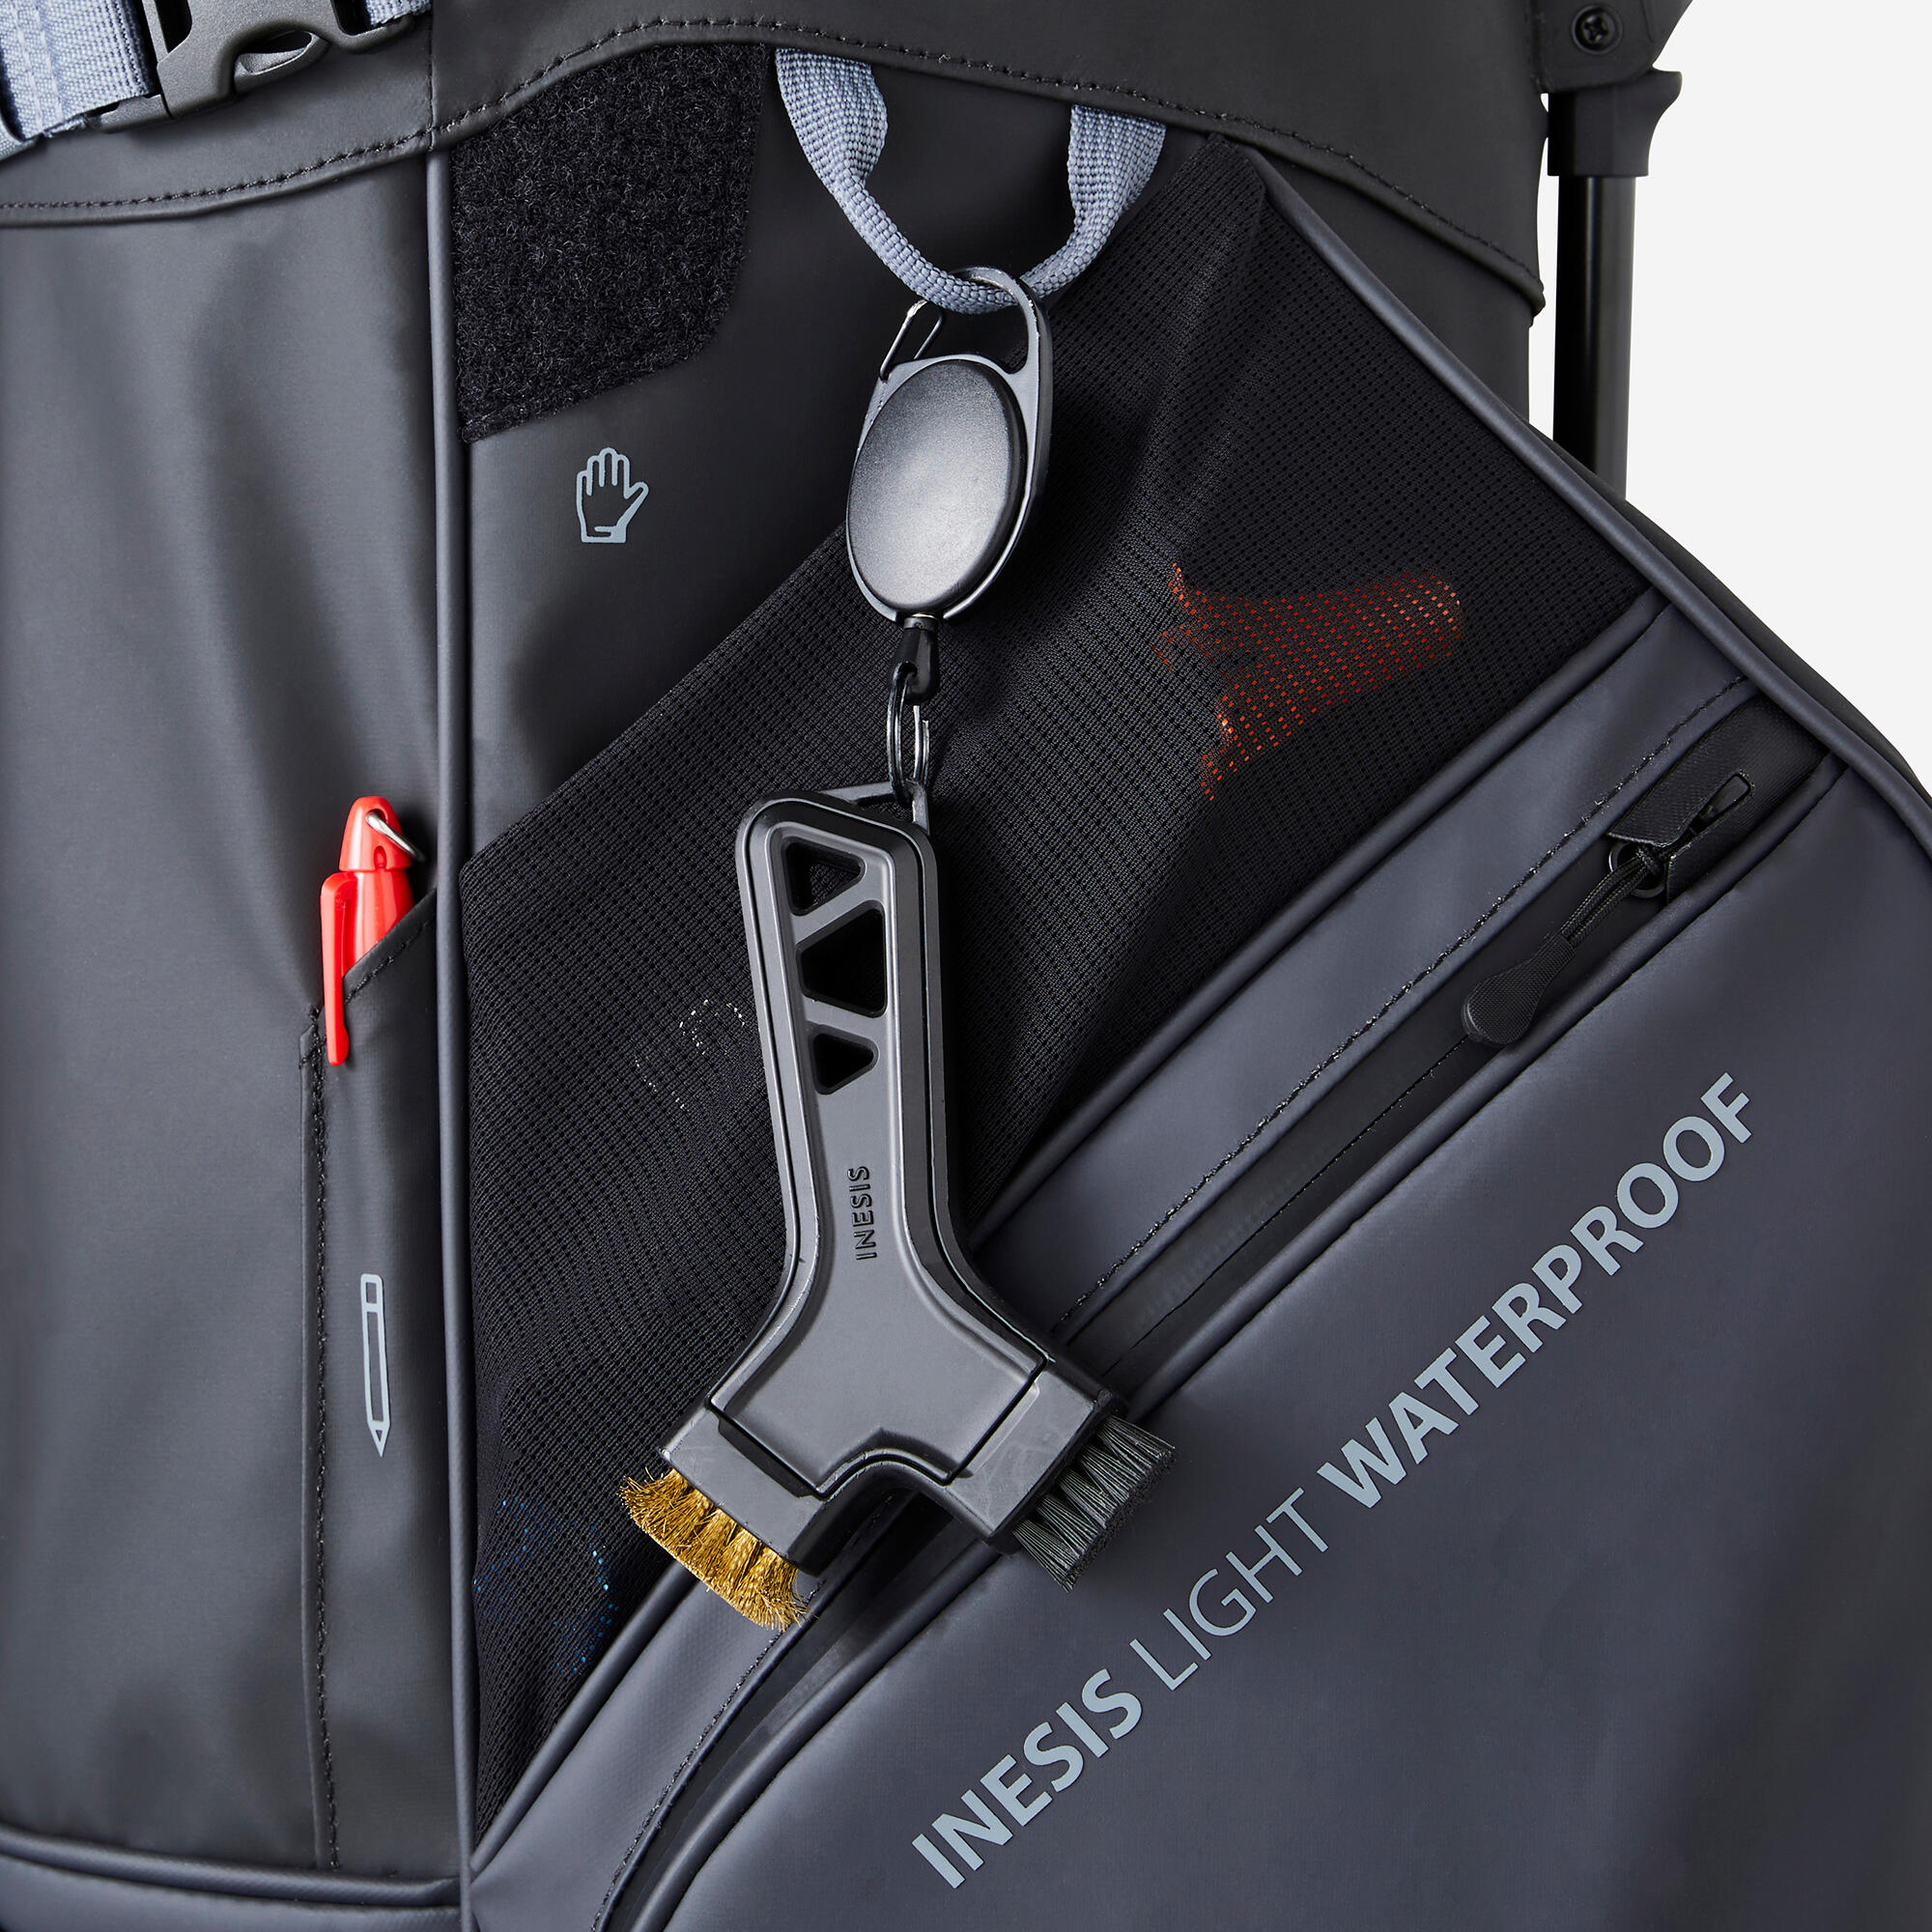 Waterproof golf stand bag - INESIS Light grey 7/11